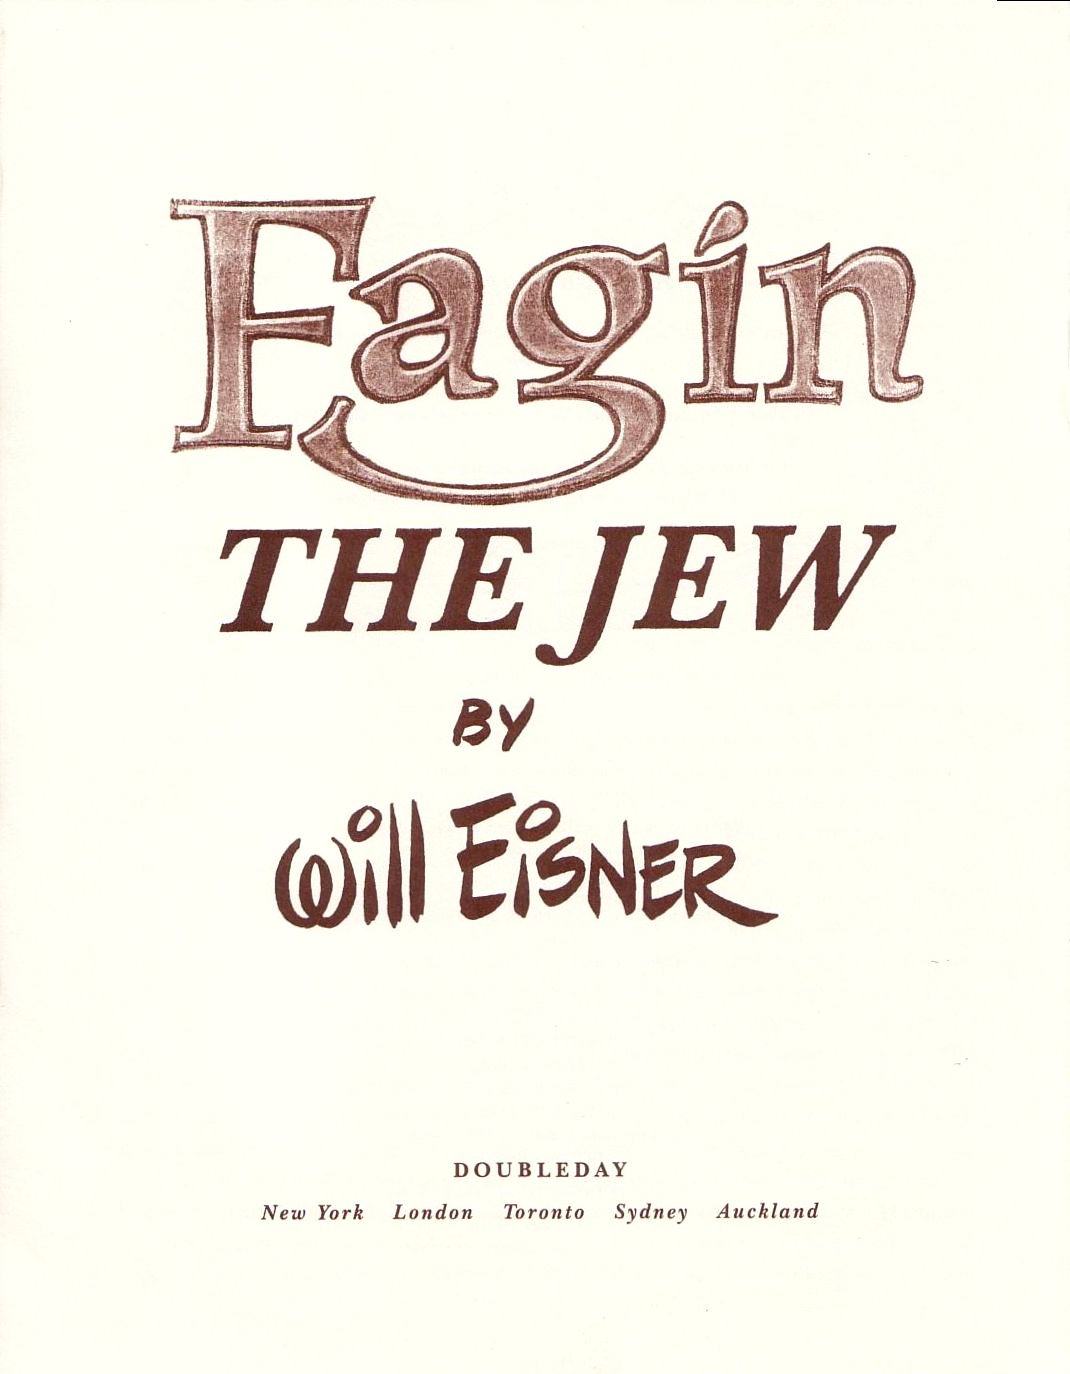 Read online Fagin the Jew comic -  Issue # TPB - 2